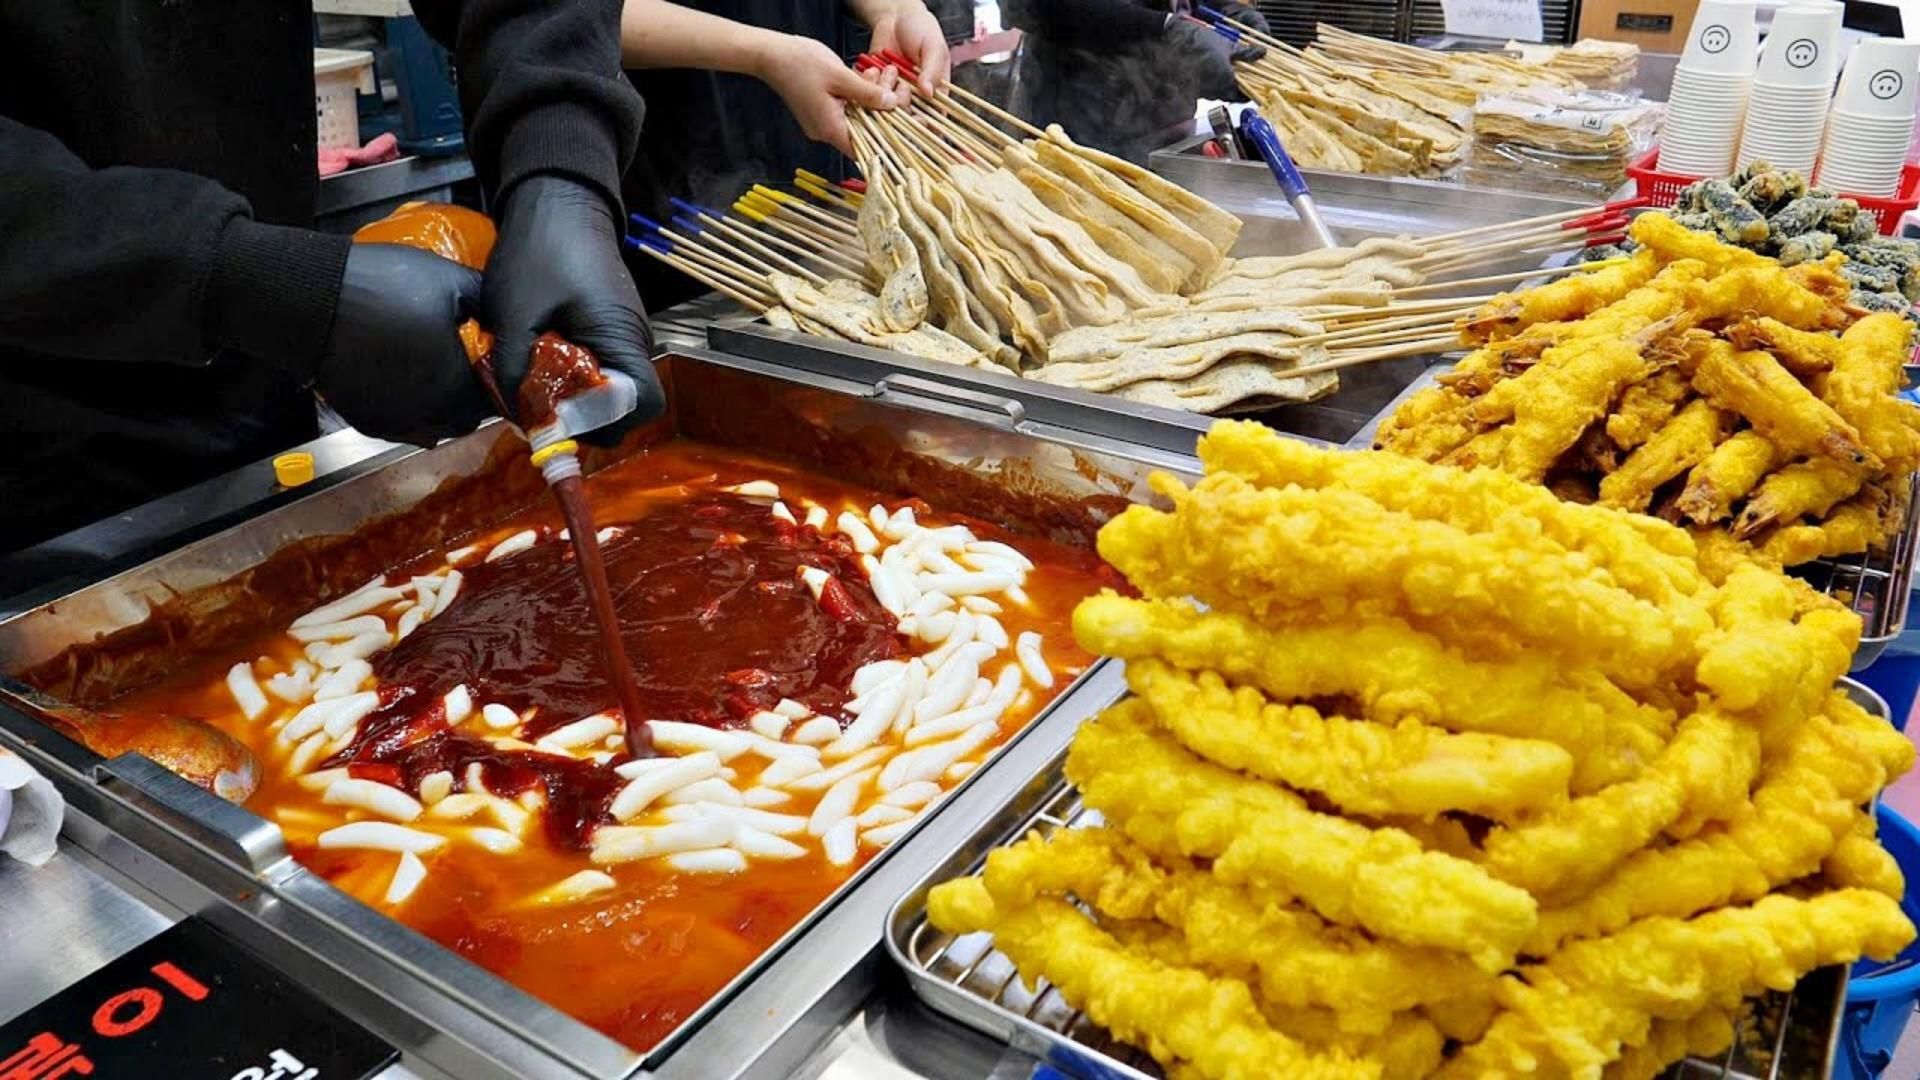 1000碗一上午就卖光了， tteokbokki 大师的惊人技能--韩国街头美食